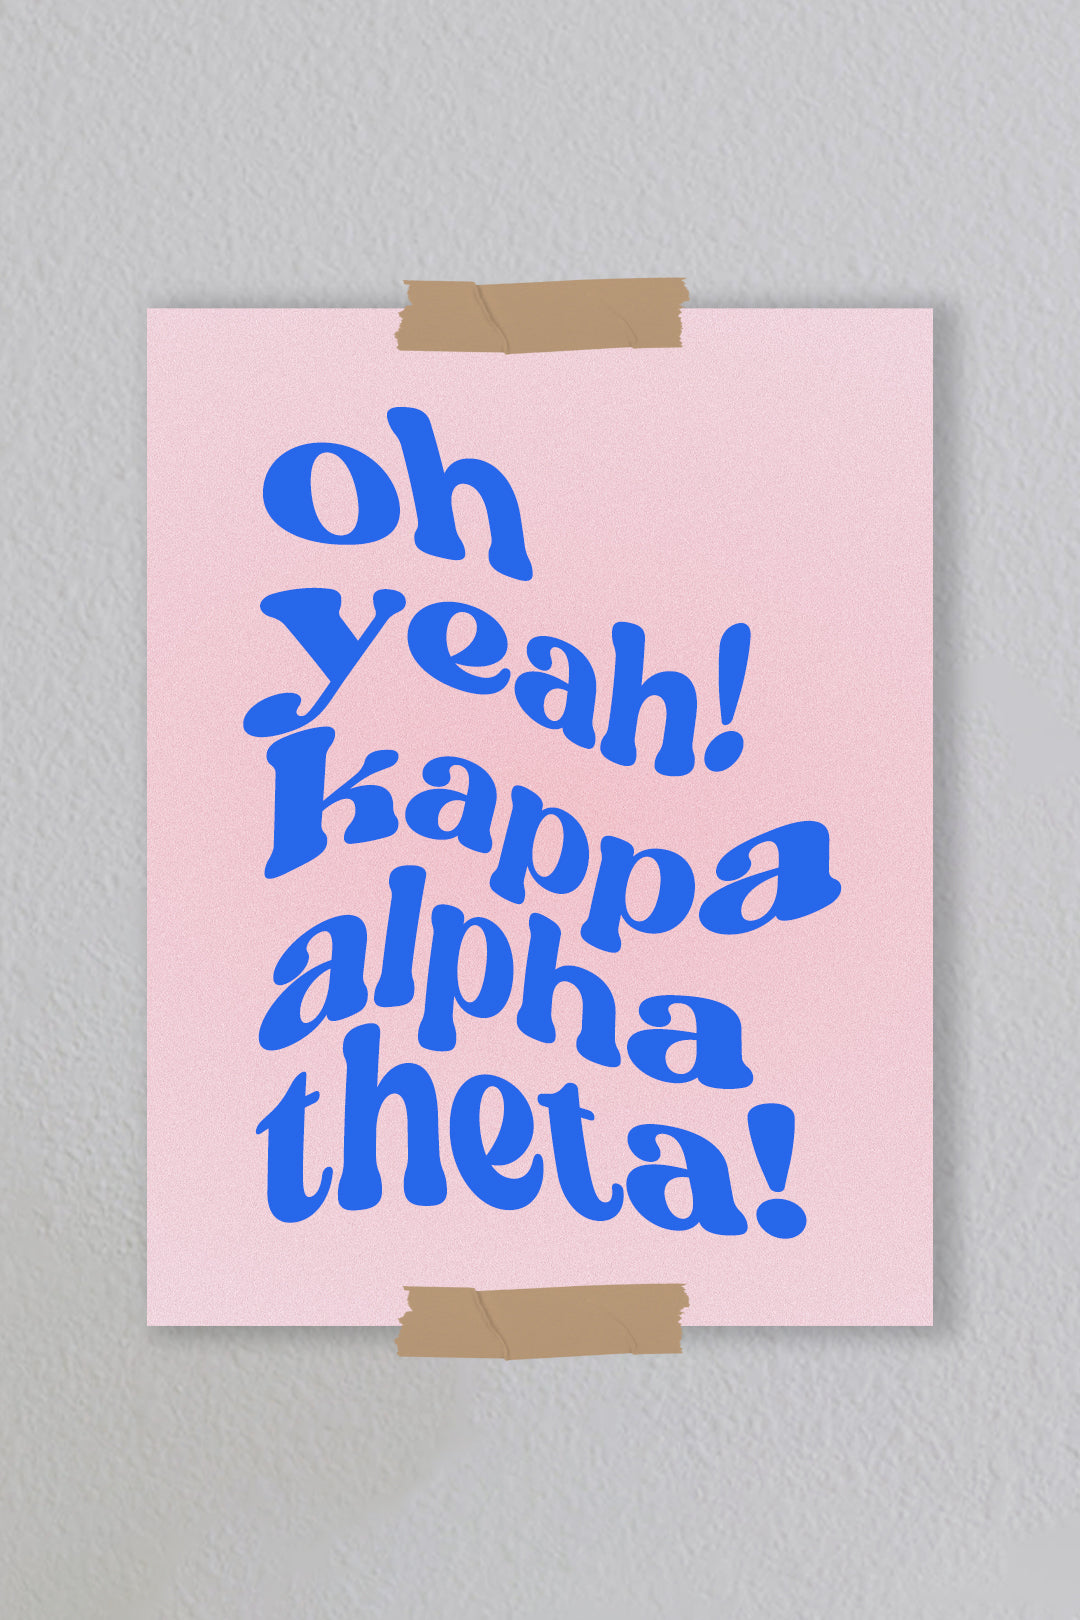 Kappa Alpha Theta - Art Print #11 (8.5x11)